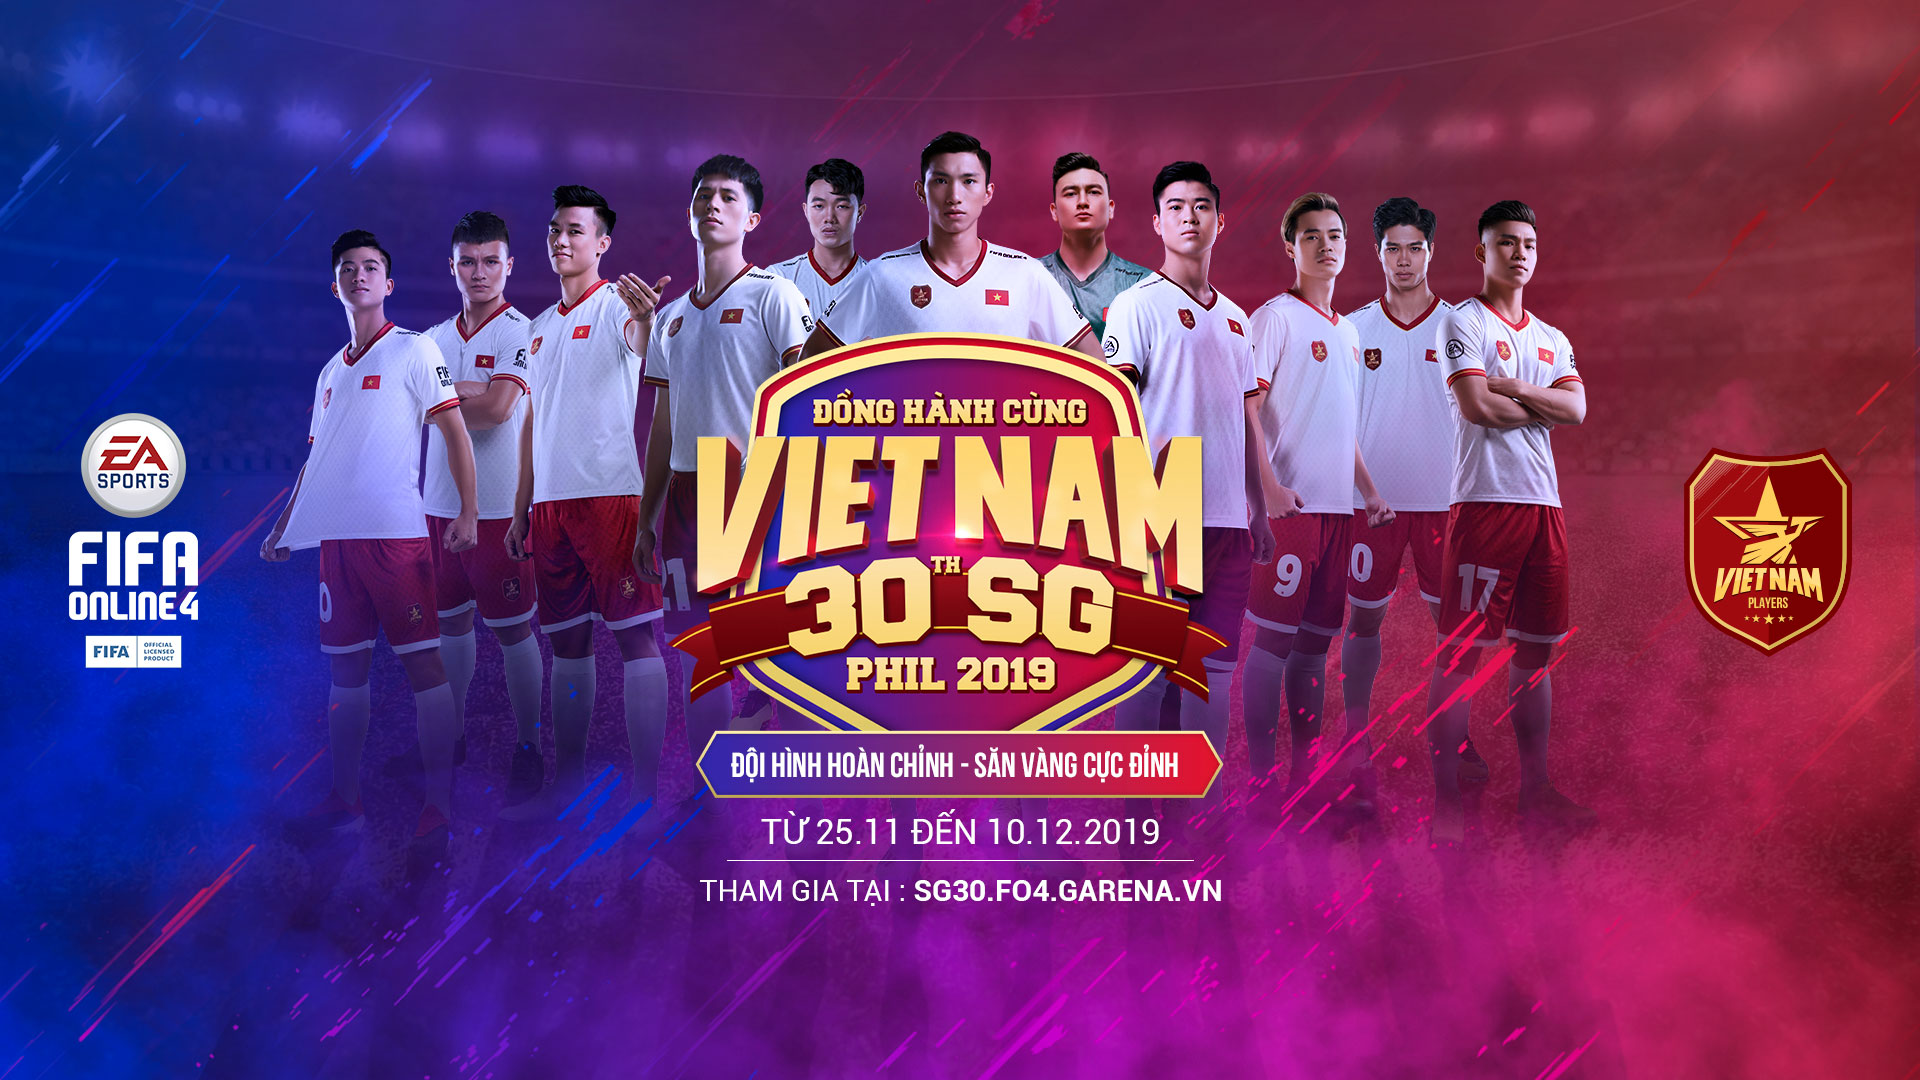 FIFA Online 4 Việt Nam  HUYỀN THOẠI MỚI VIETNAM LEGENDS SÁNH VAI HUYỀN  THOẠI  NÂNG TẦM LỊCH SỬ BÓNG ĐÁ VIỆT